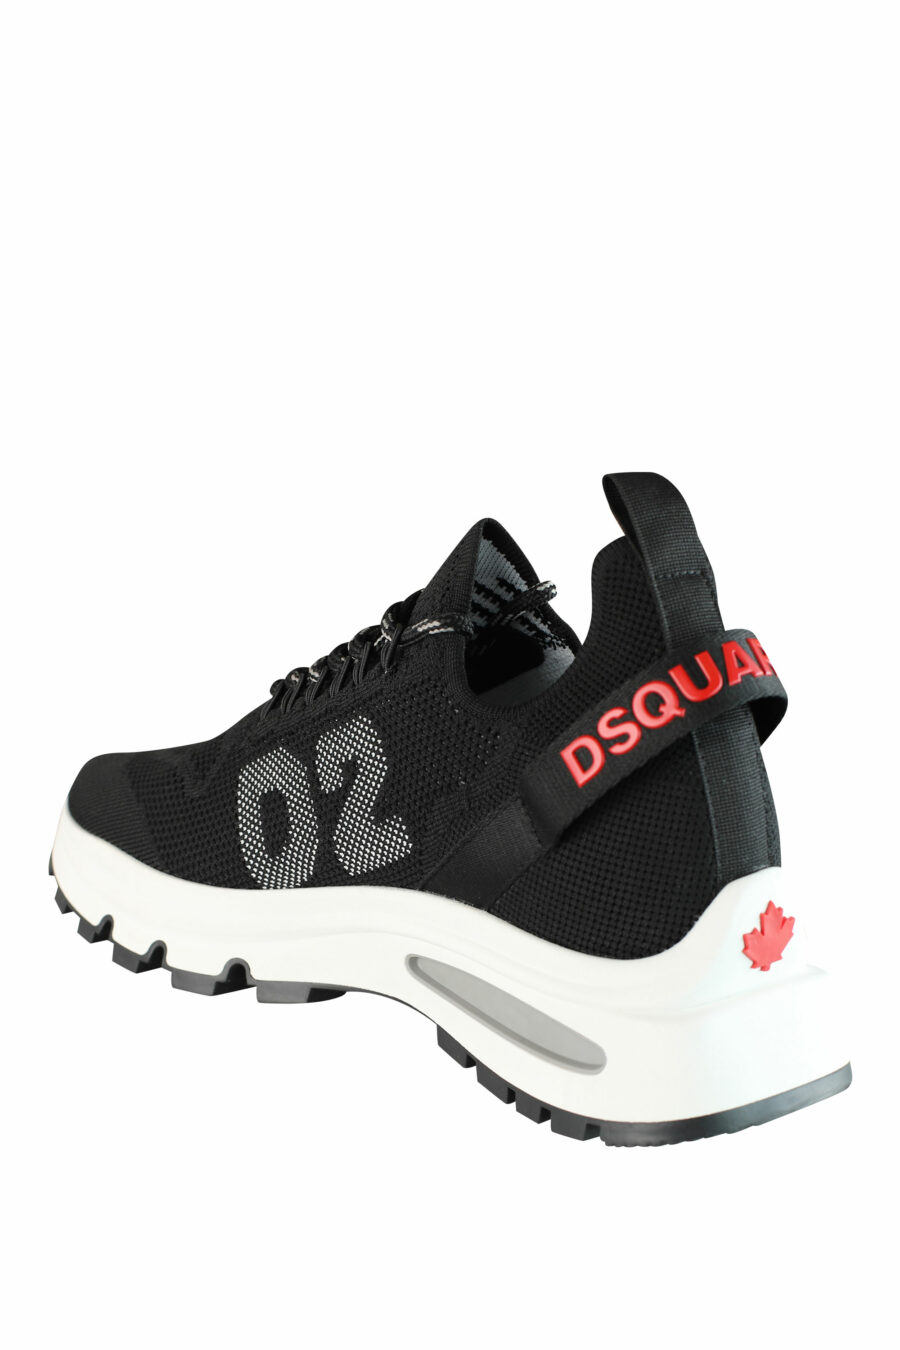 Zapatillas negras "Run D2" con logo en rojo - IMG 1418